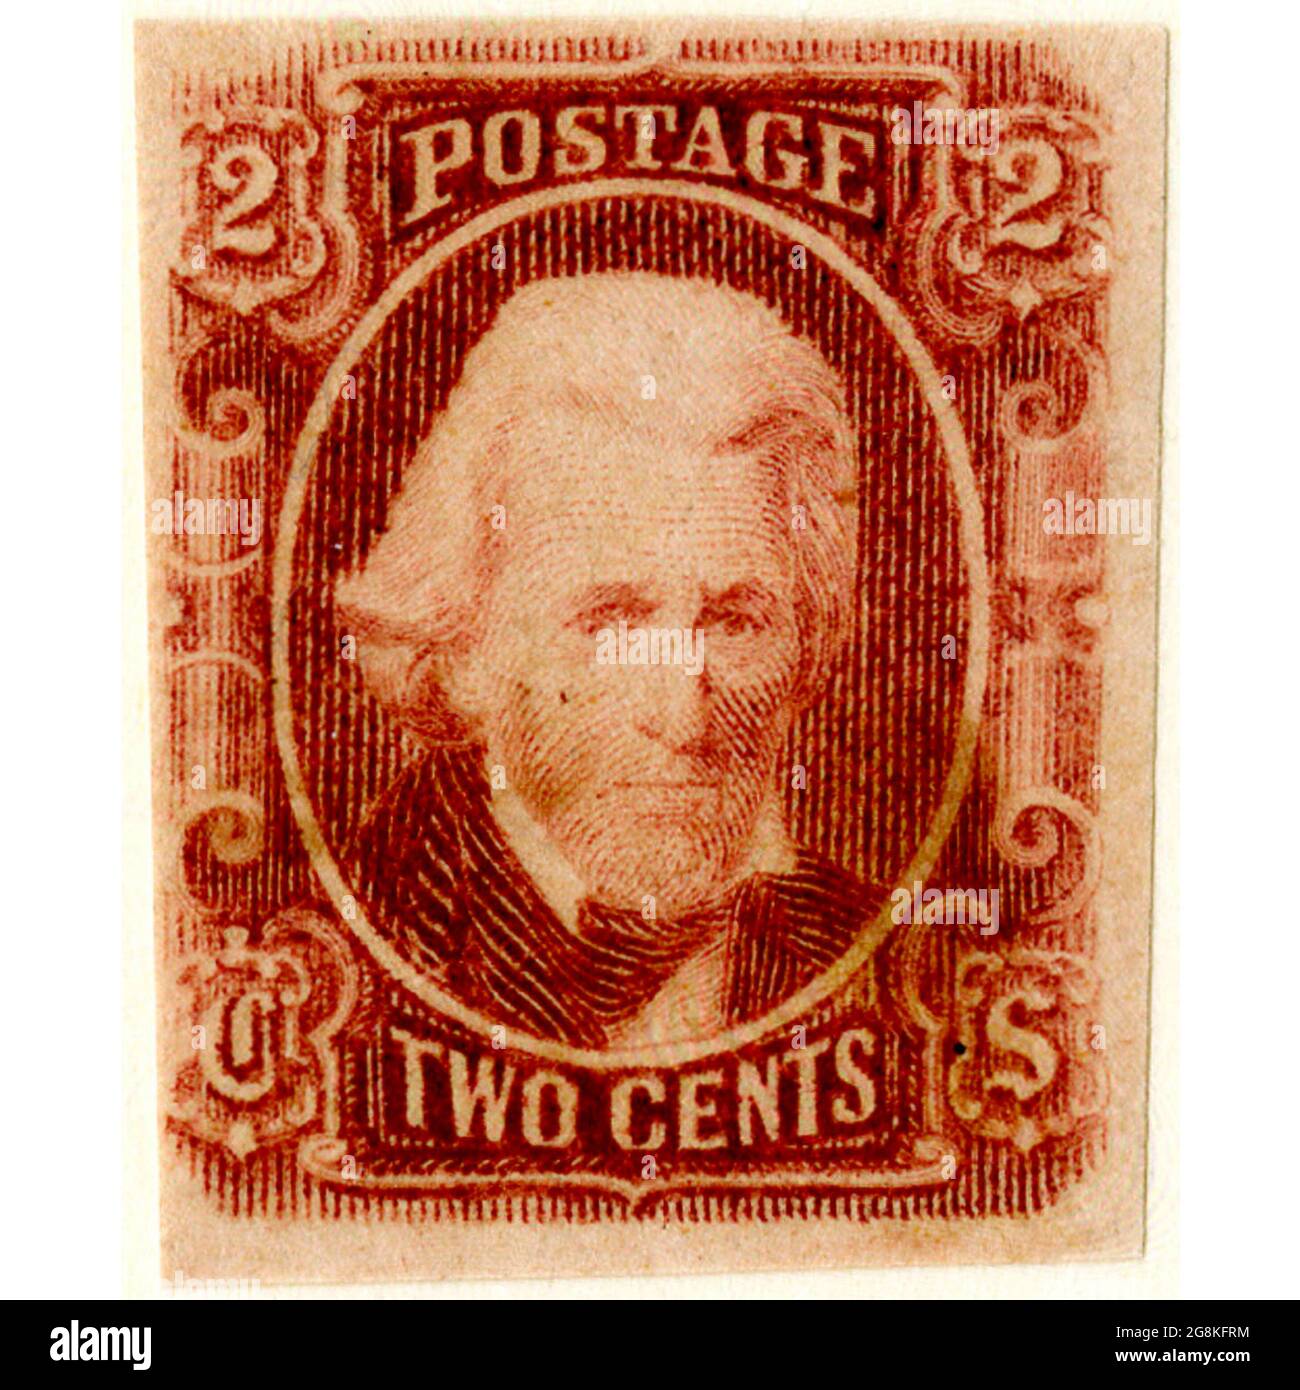 Timbres-poste confédérés, rouge brun à deux cents, numéro général 1863, type 8. Le timbre-poste représente Andrew Jackson imprimé en rouge brun. Service postal des États confédérés d'Amérique. Richmond, Virginie : Dietz Printing Co., 1929. Banque D'Images